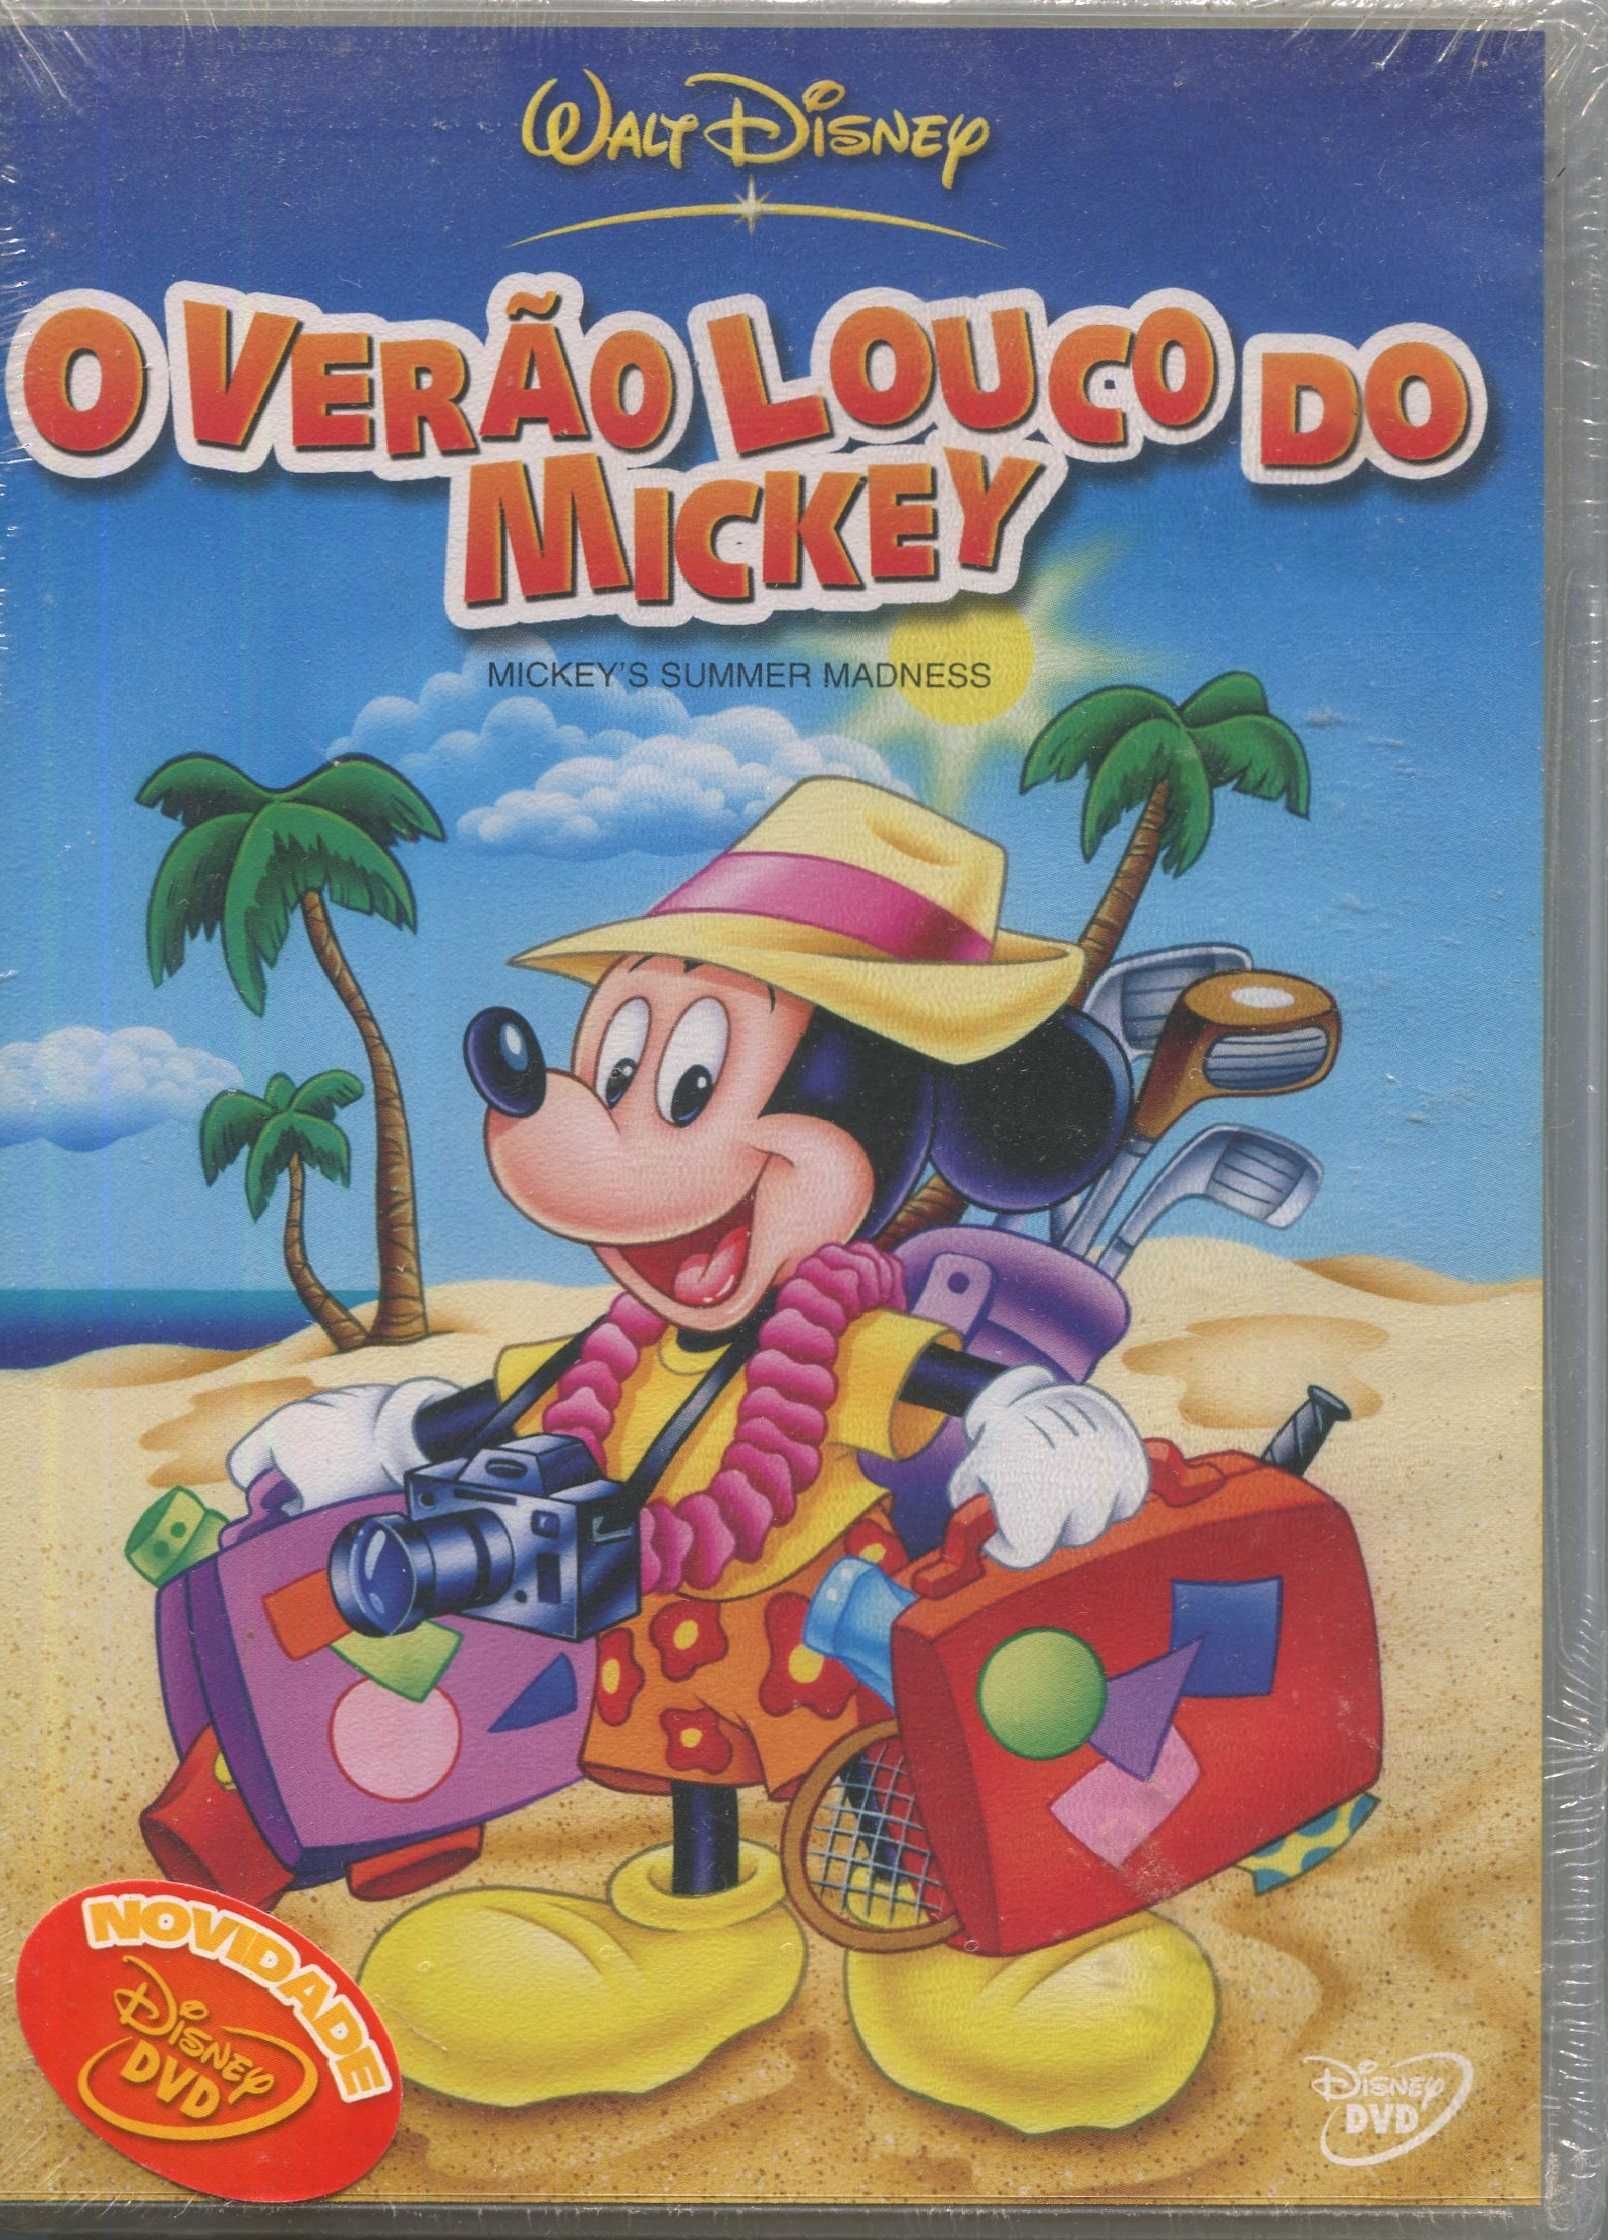 DVD’s Originais Novos/Selados- 7 a 12 €-Animação/Infantil-Walt Disney